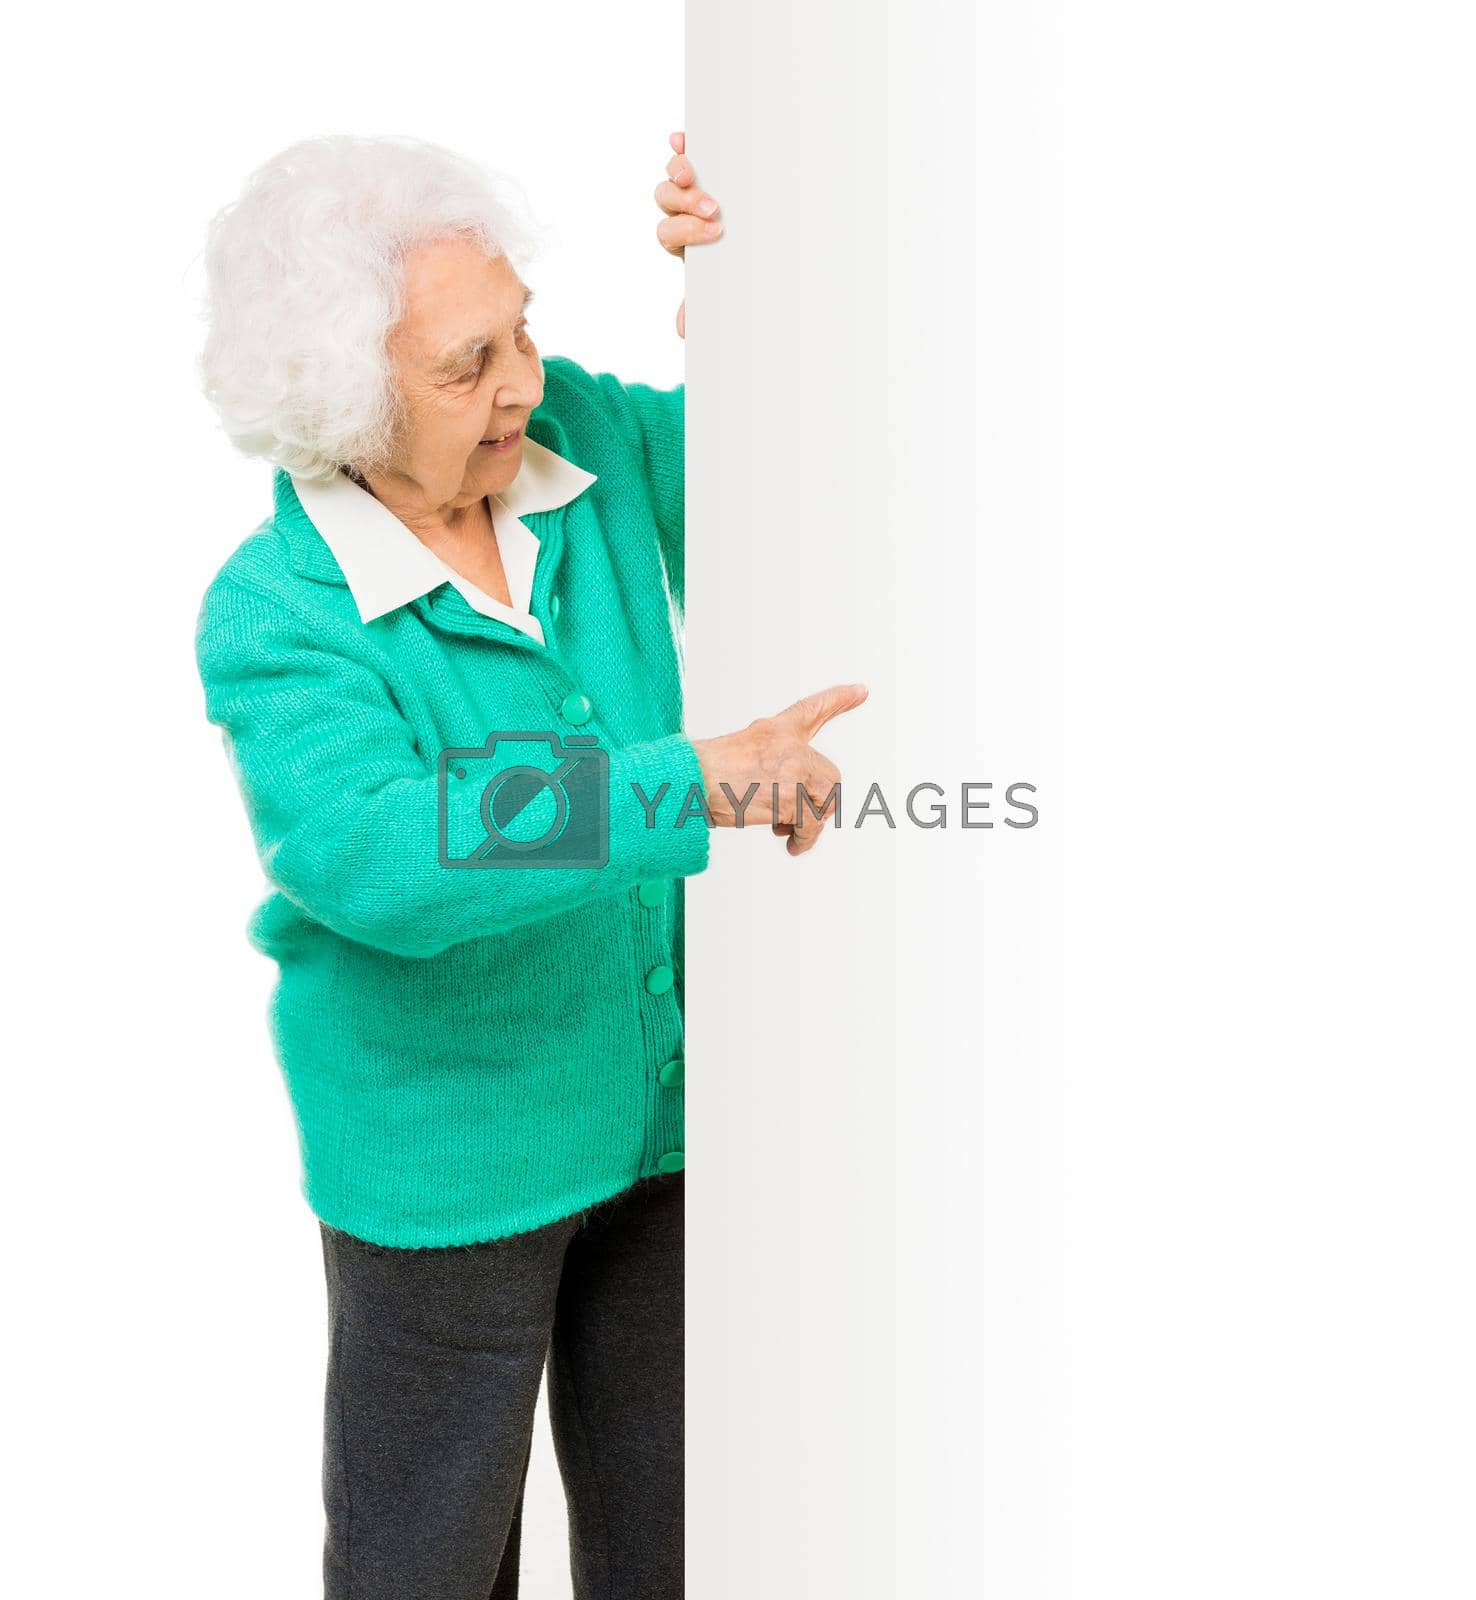 Royalty free image of elderly woman alongside of ad board by tan4ikk1